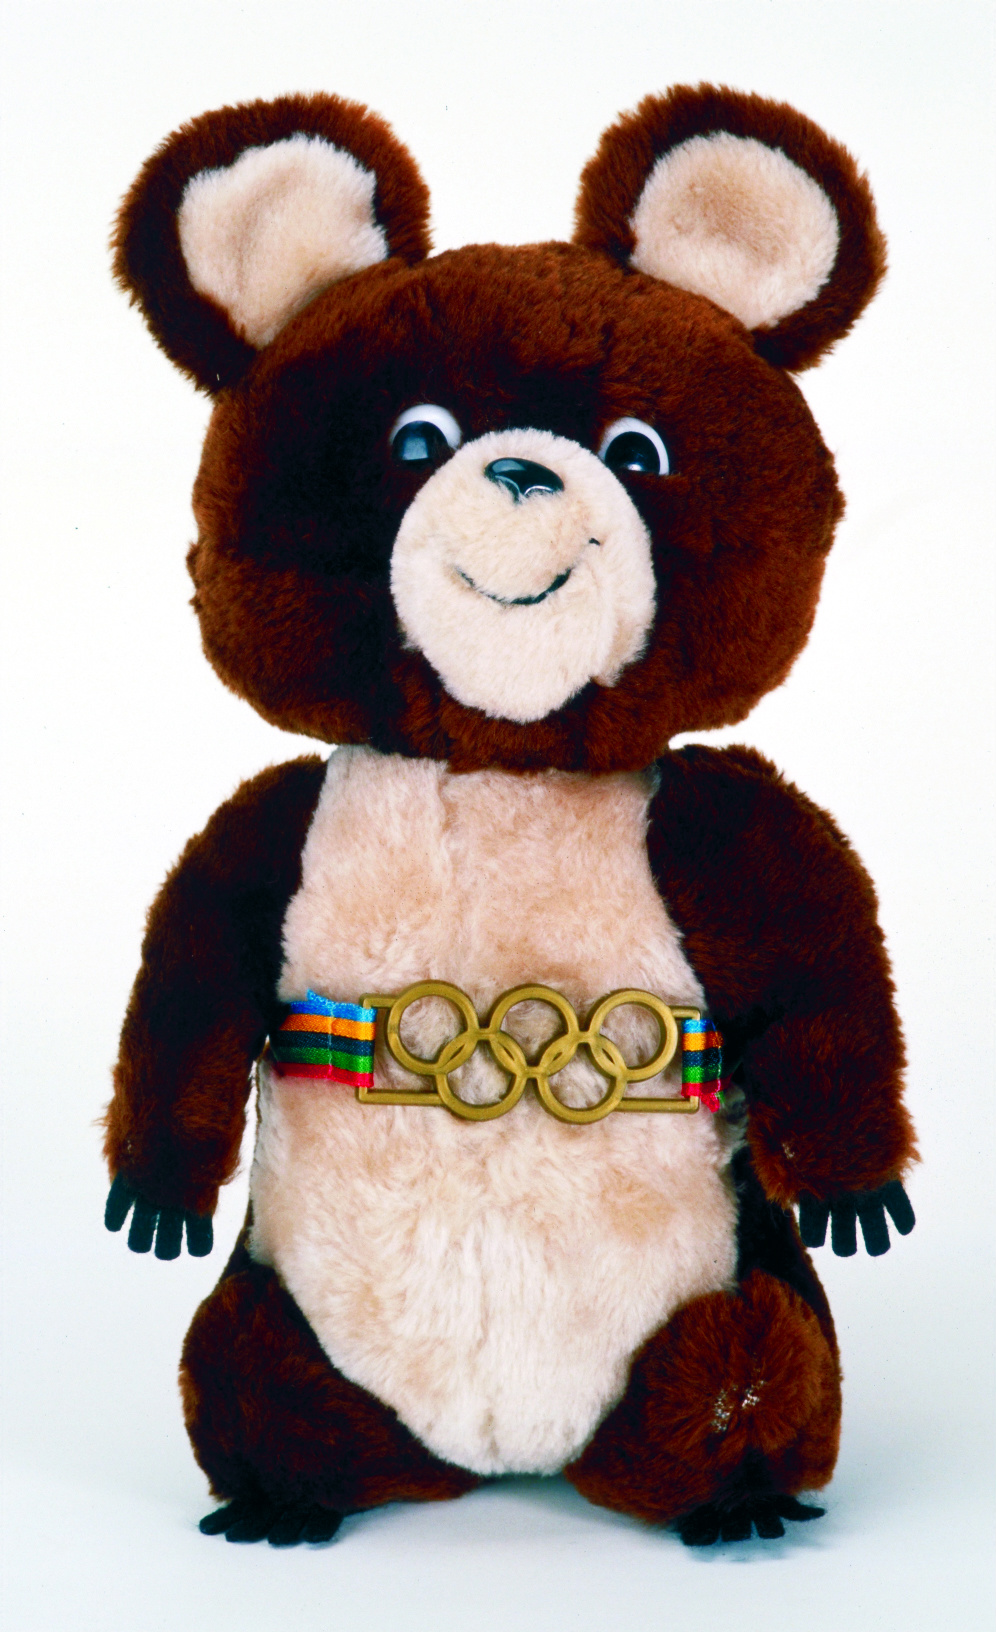 Conheça a história dos mascotes dos Jogos Olímpicos